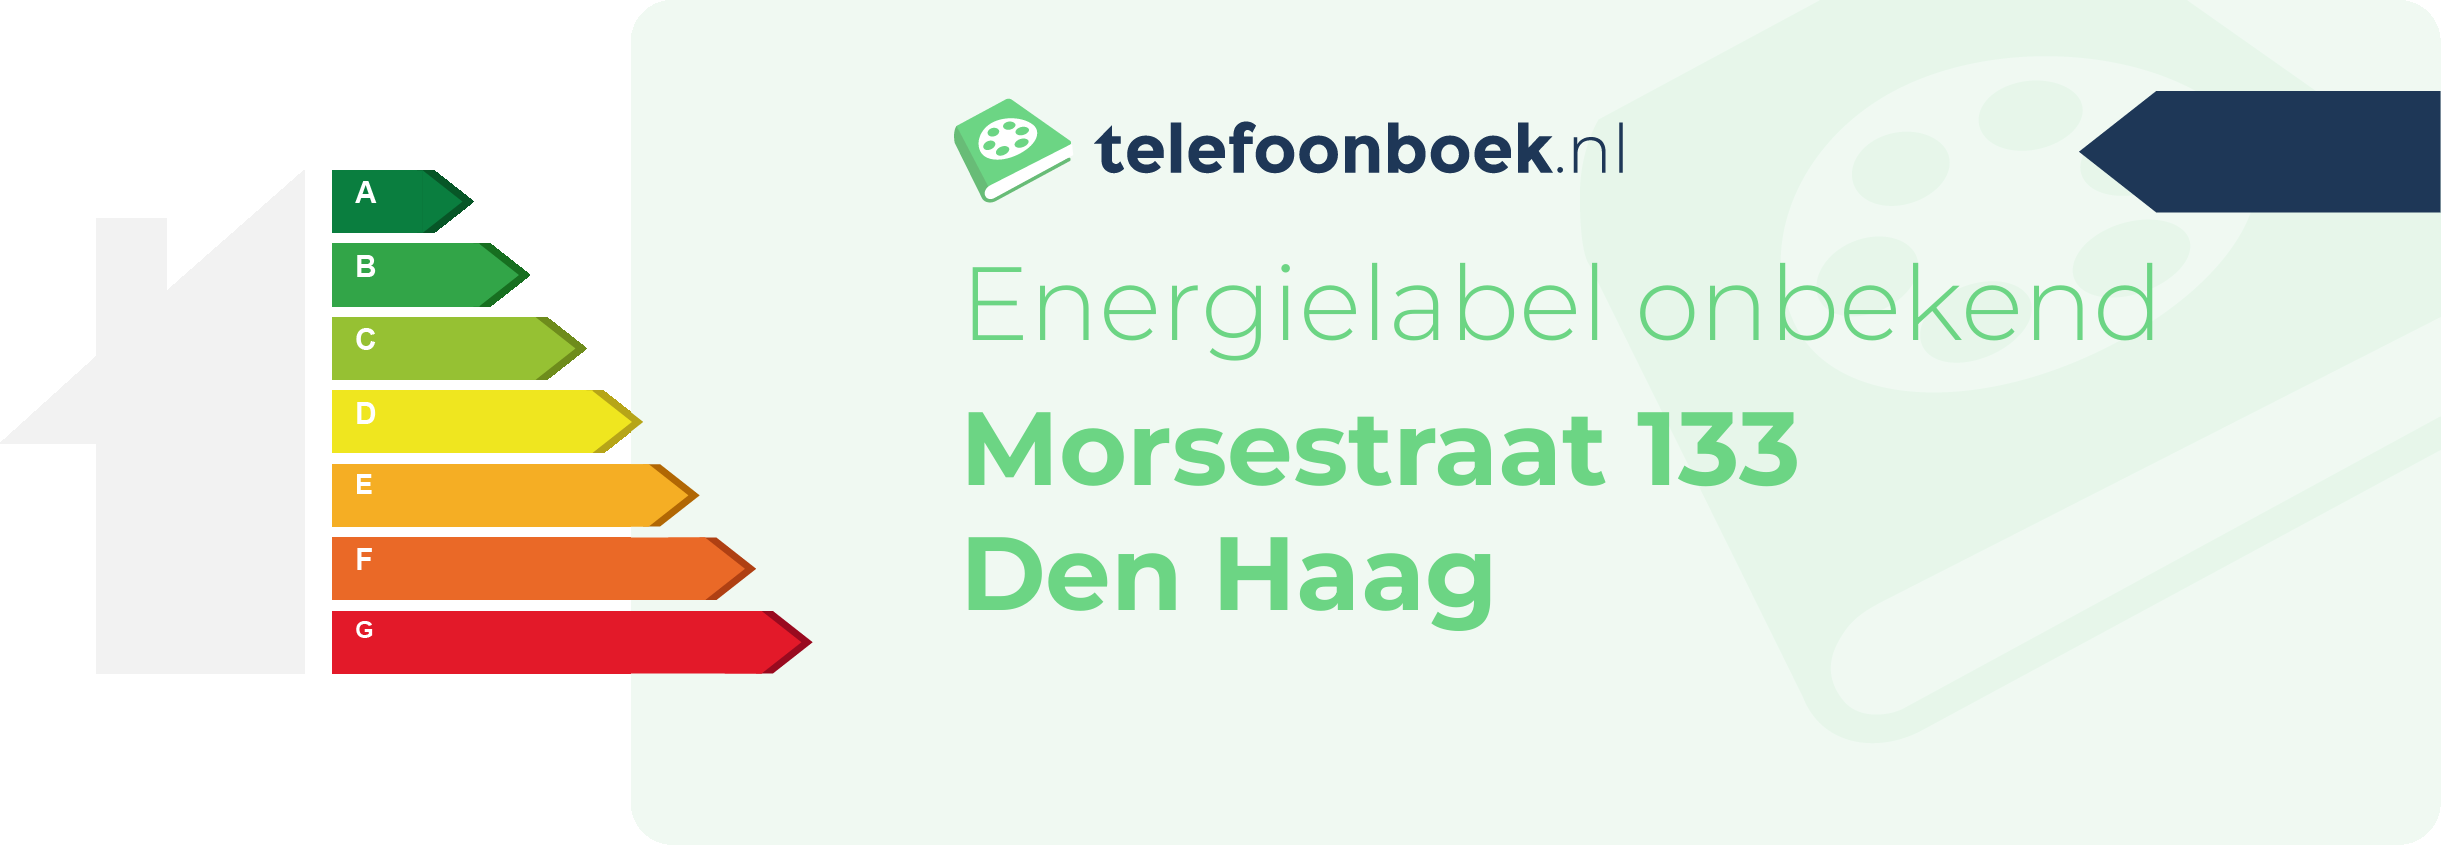 Energielabel Morsestraat 133 Den Haag